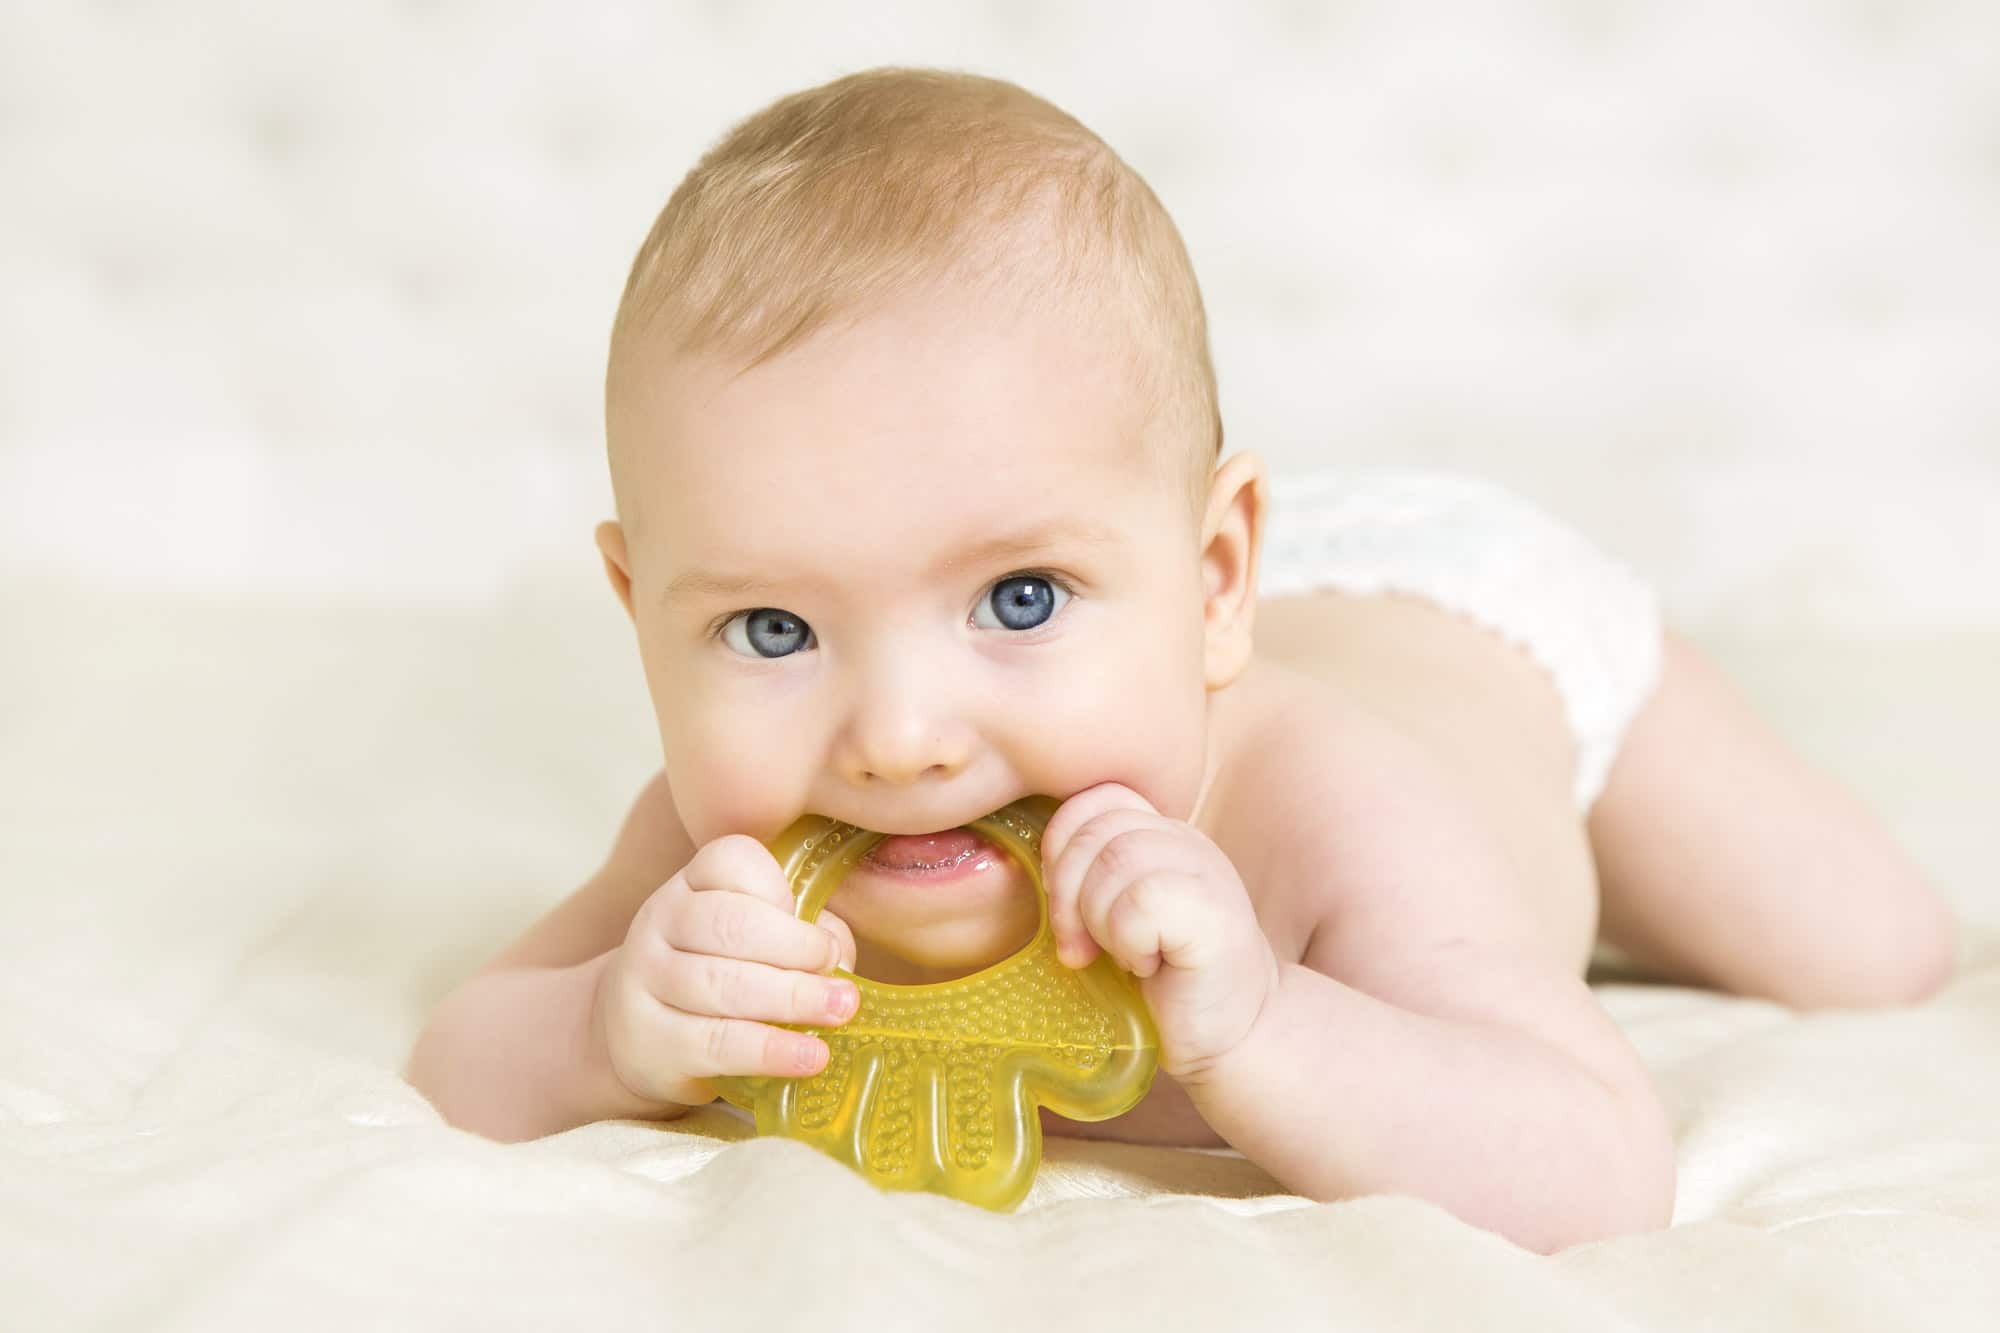 Baby - Human Age, Teeth, Teething Toy, Beginnings, Pacifier